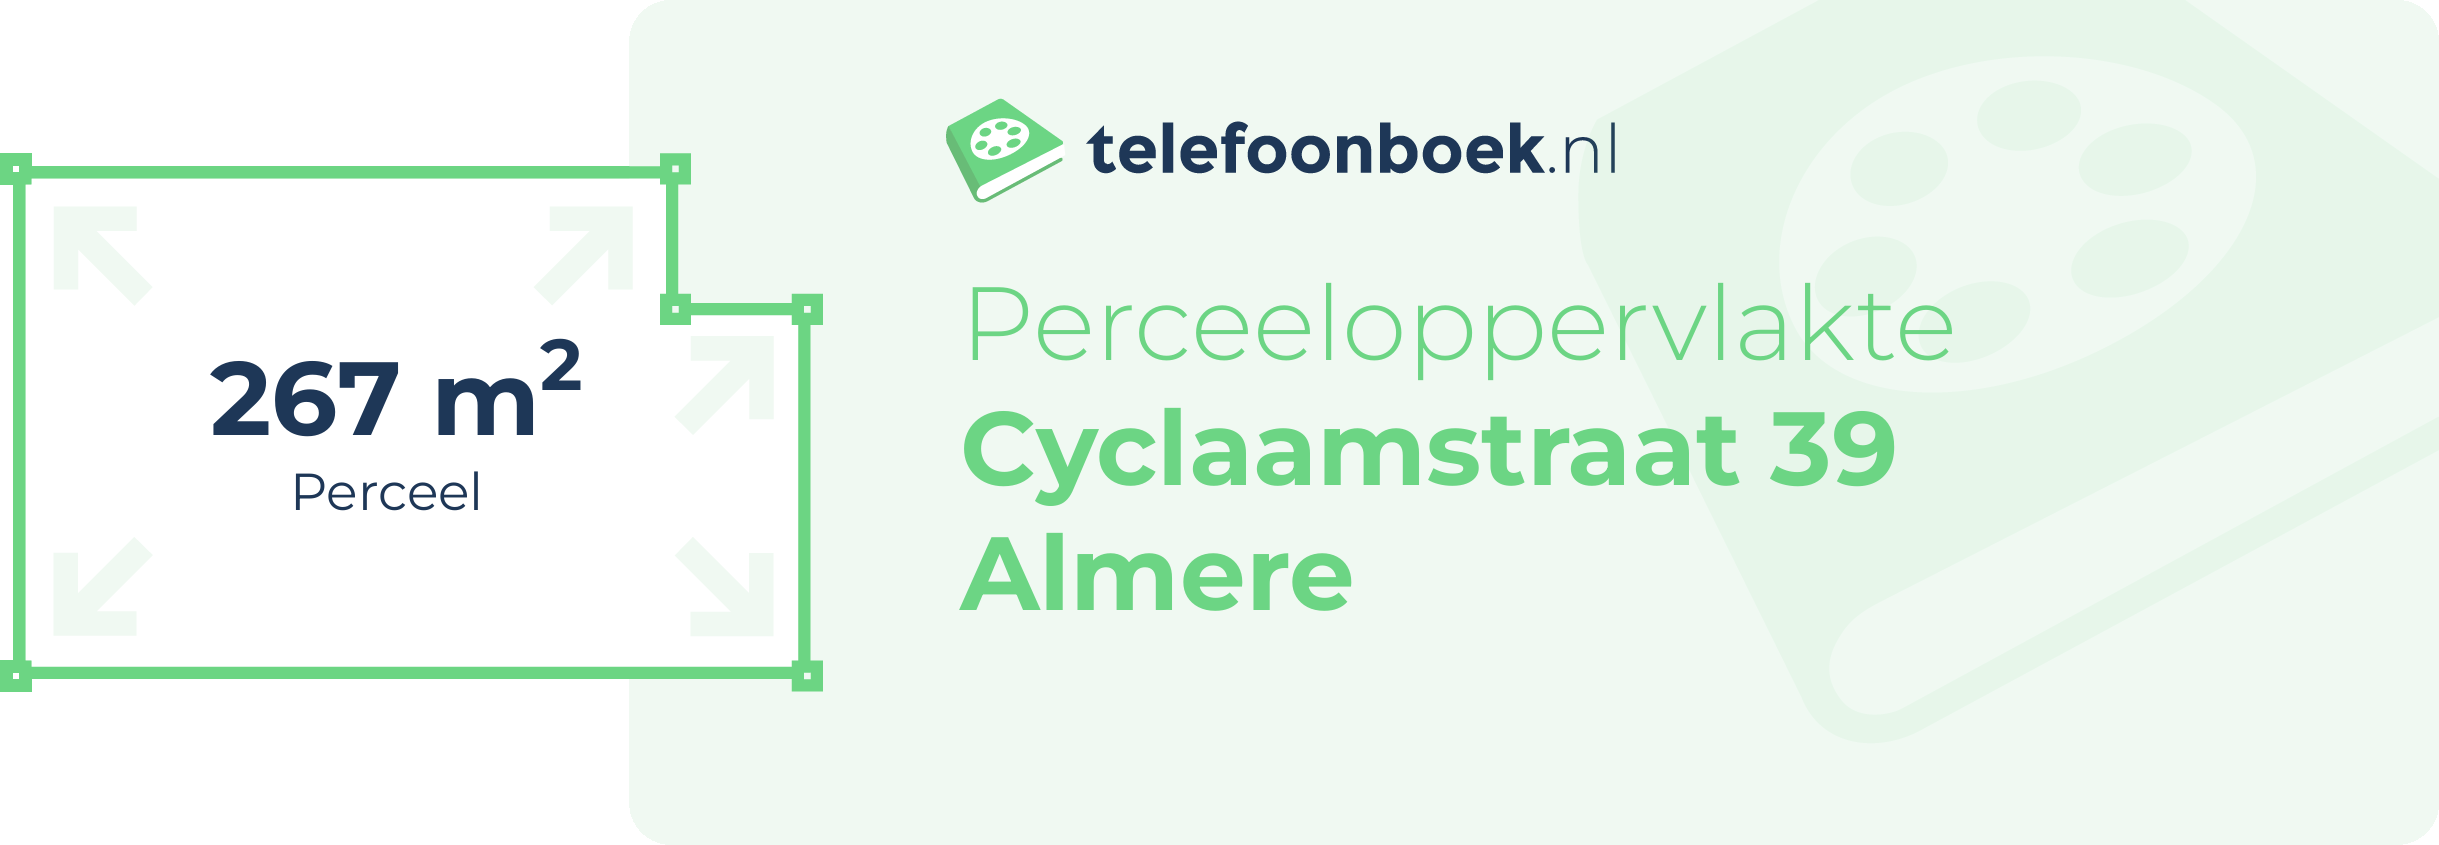 Perceeloppervlakte Cyclaamstraat 39 Almere